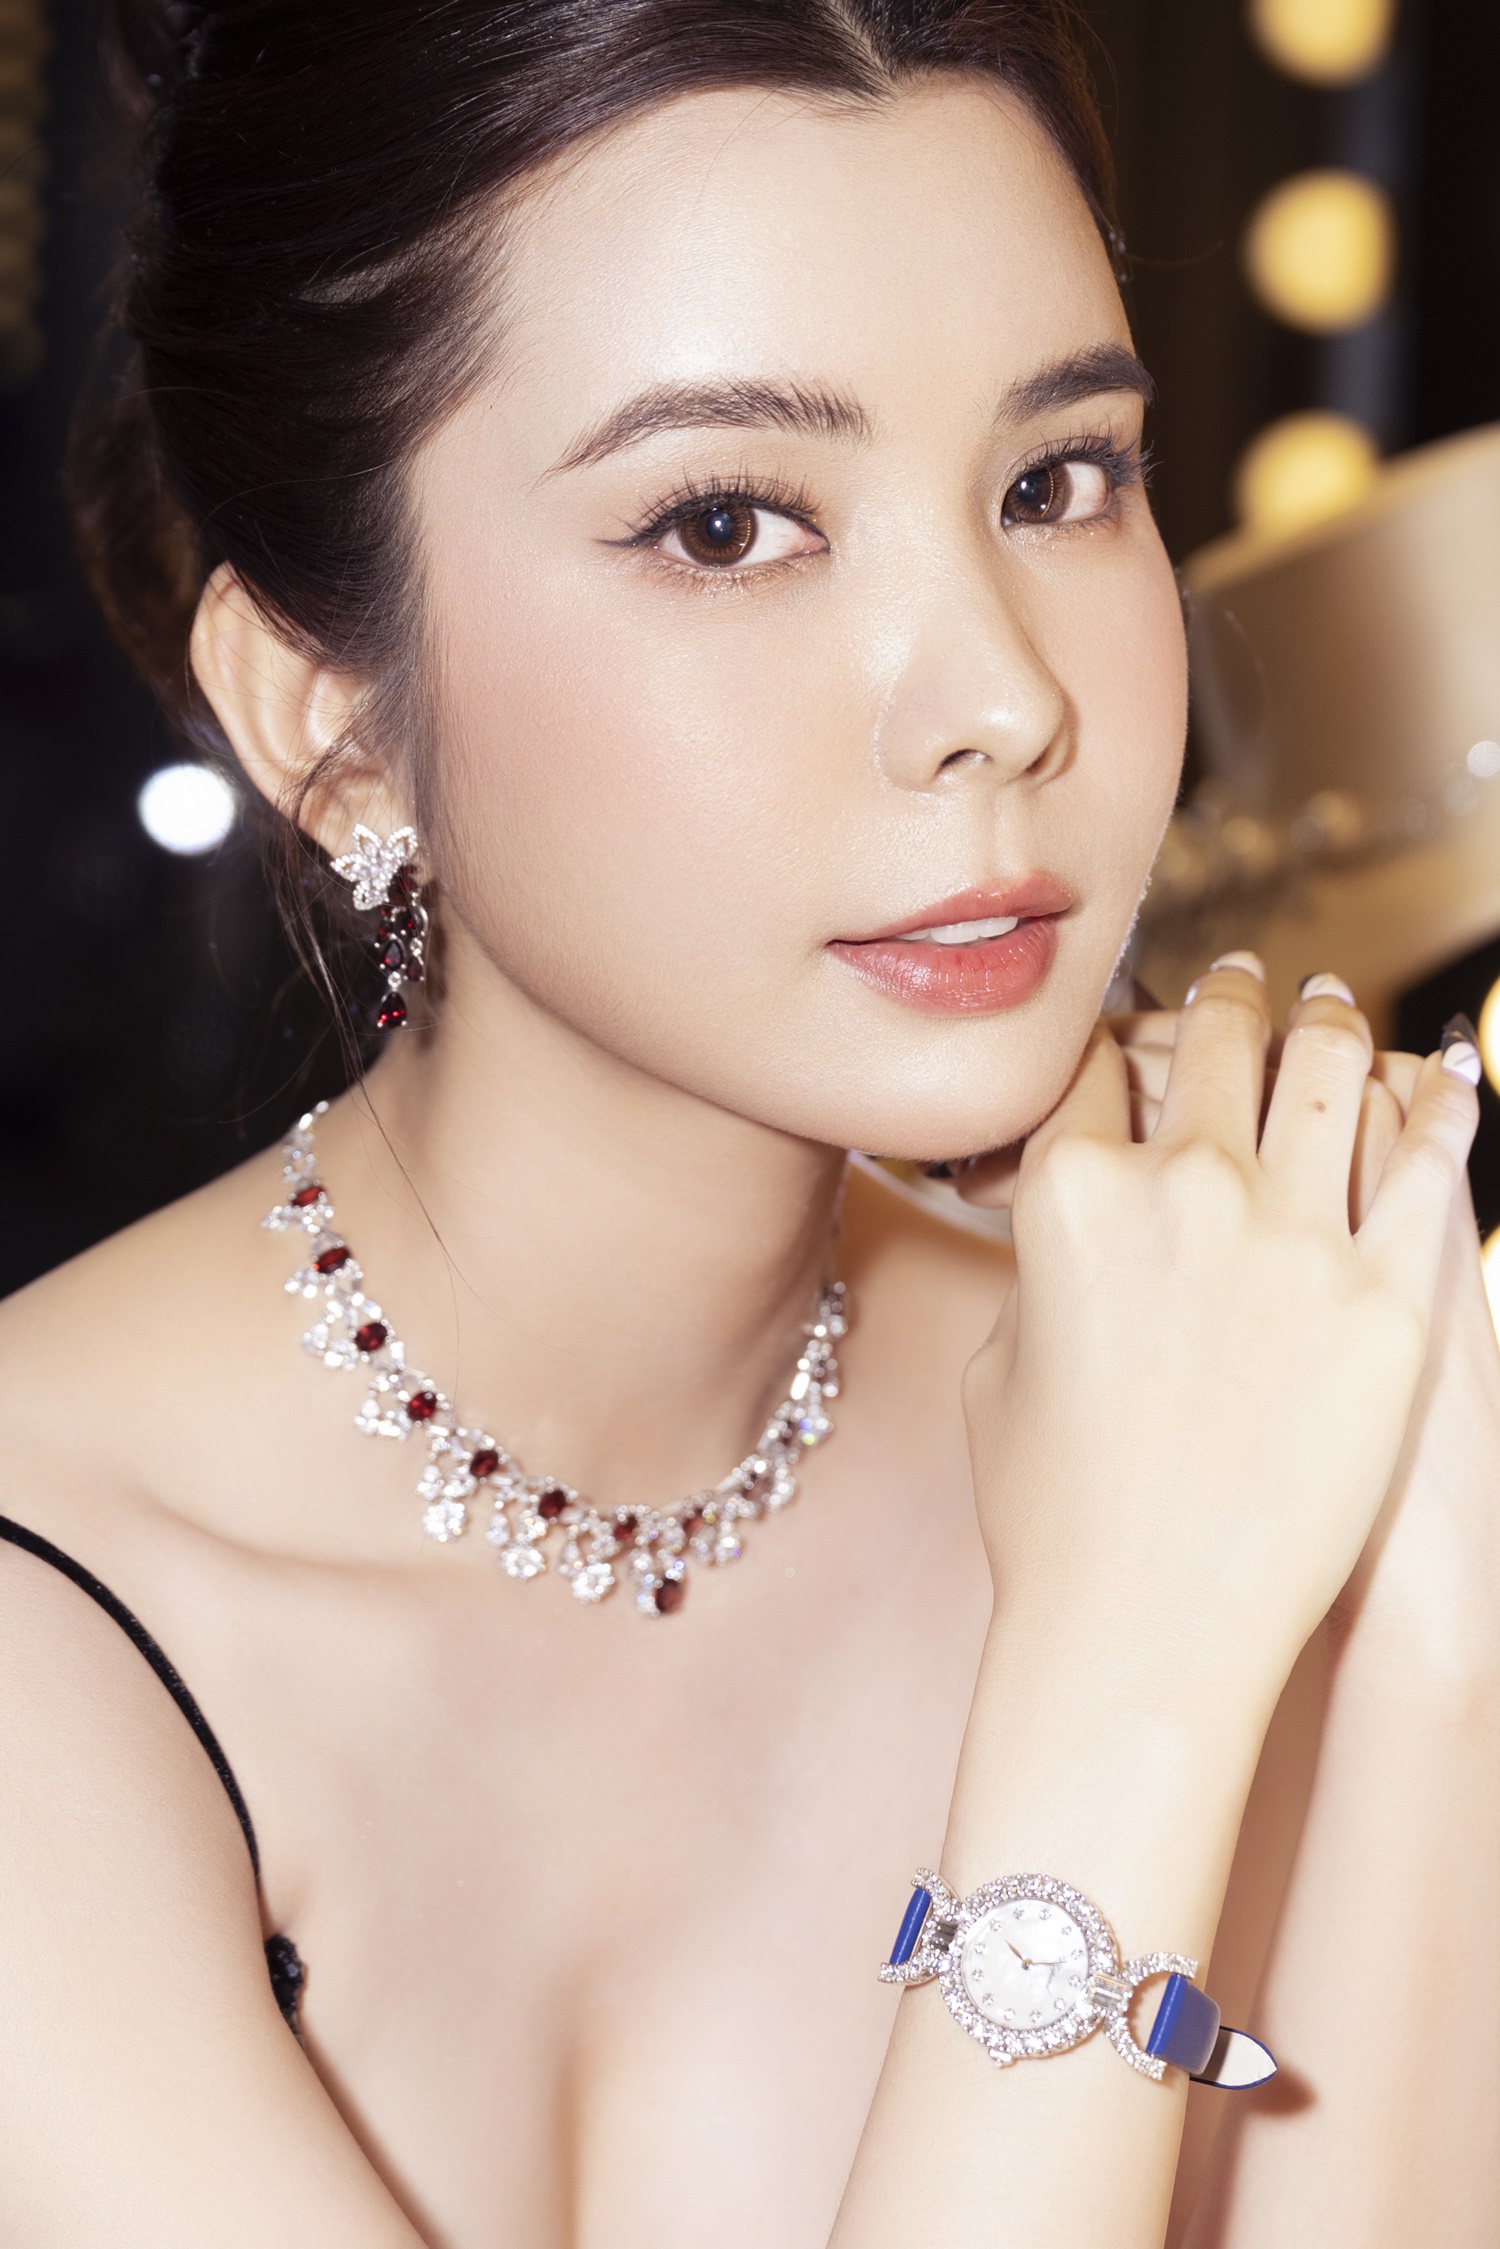 Hoa hậu Huỳnh Vy đeo trang sức chục tỉ đi sự kiện - Ảnh 2.